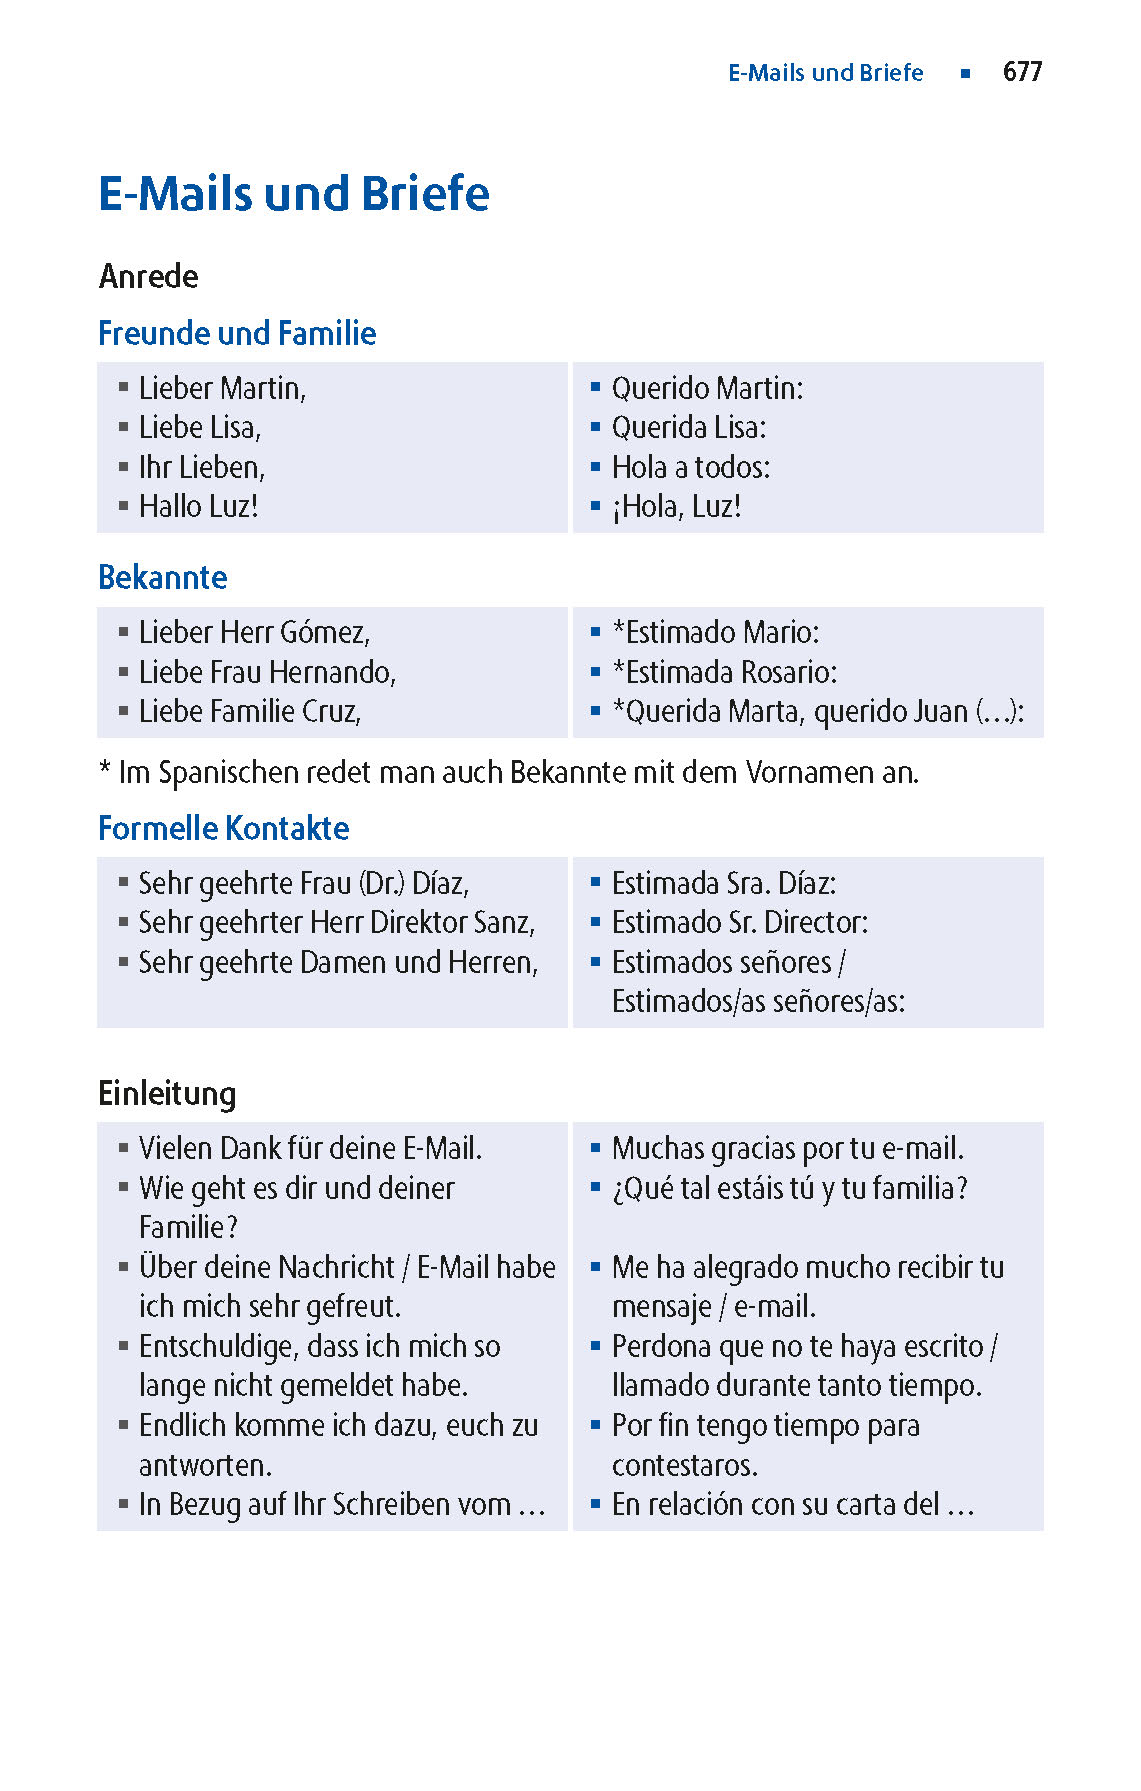 Langenscheidt Praktisches Wörterbuch Spanisch